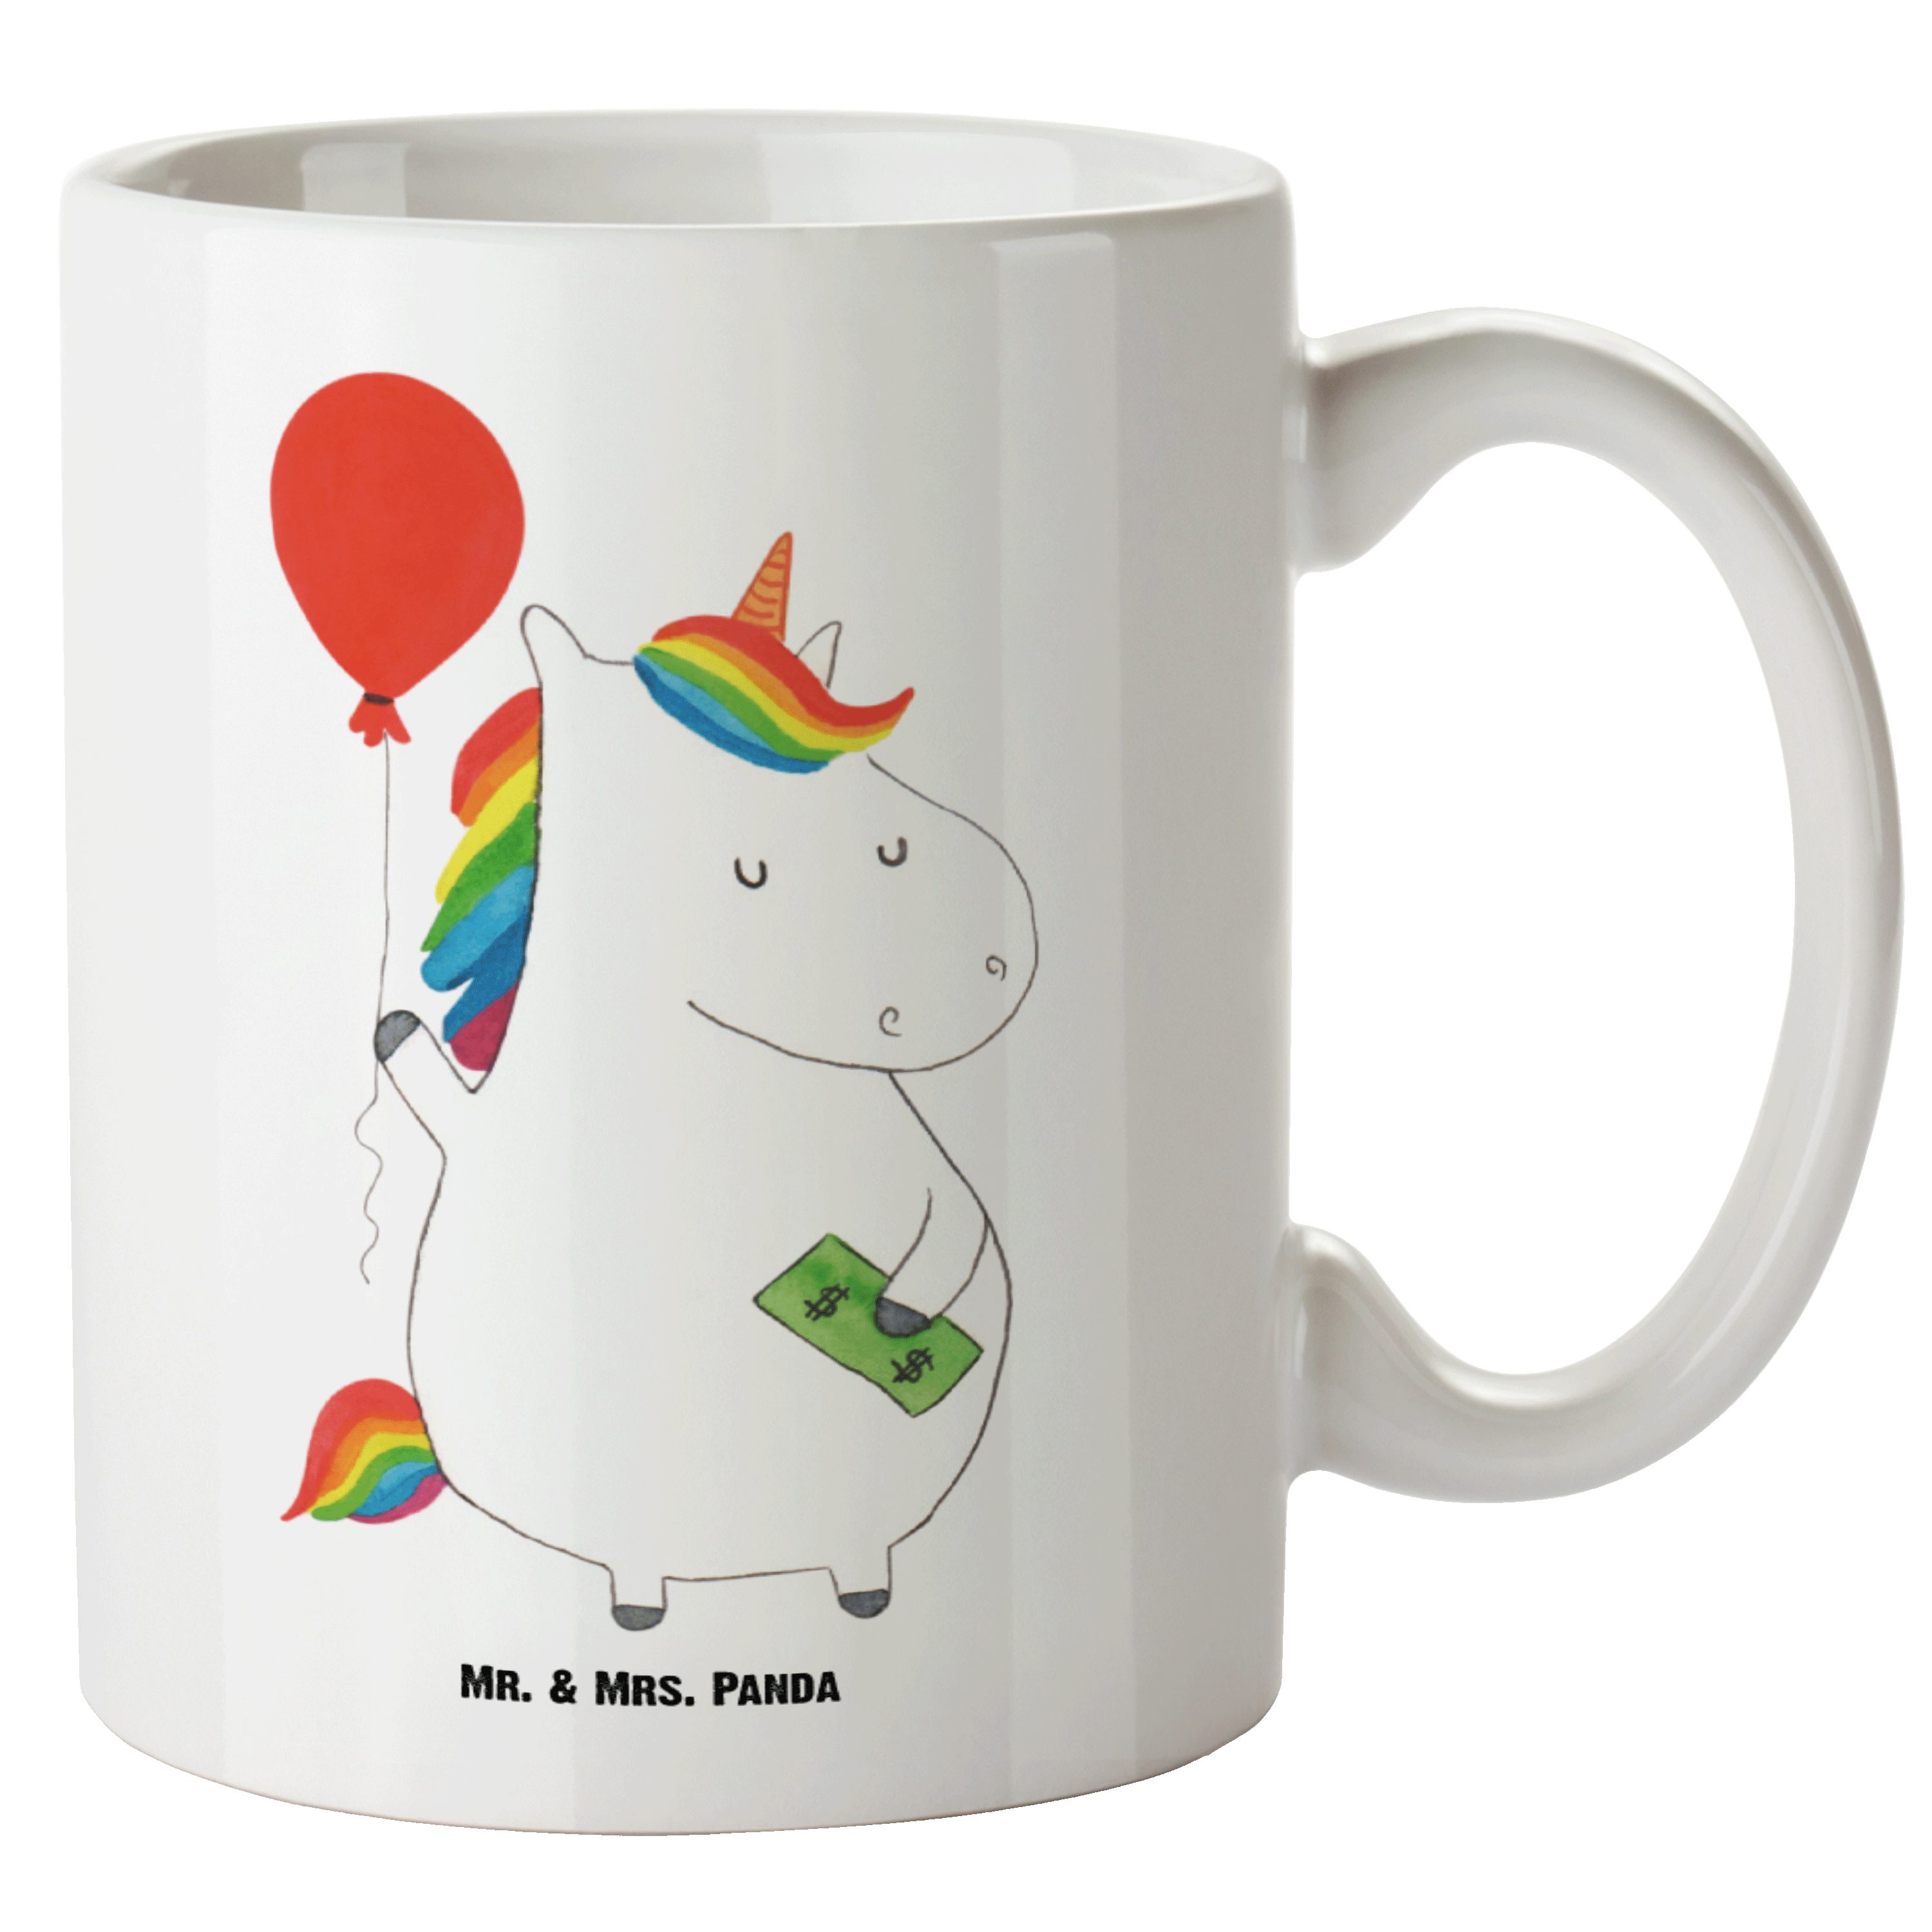 Mr. & Mrs. Panda Tasse Einhorn Luftballon - Weiß - Geschenk, XL Becher, Einhorn Deko, Pegasu, XL Tasse Keramik